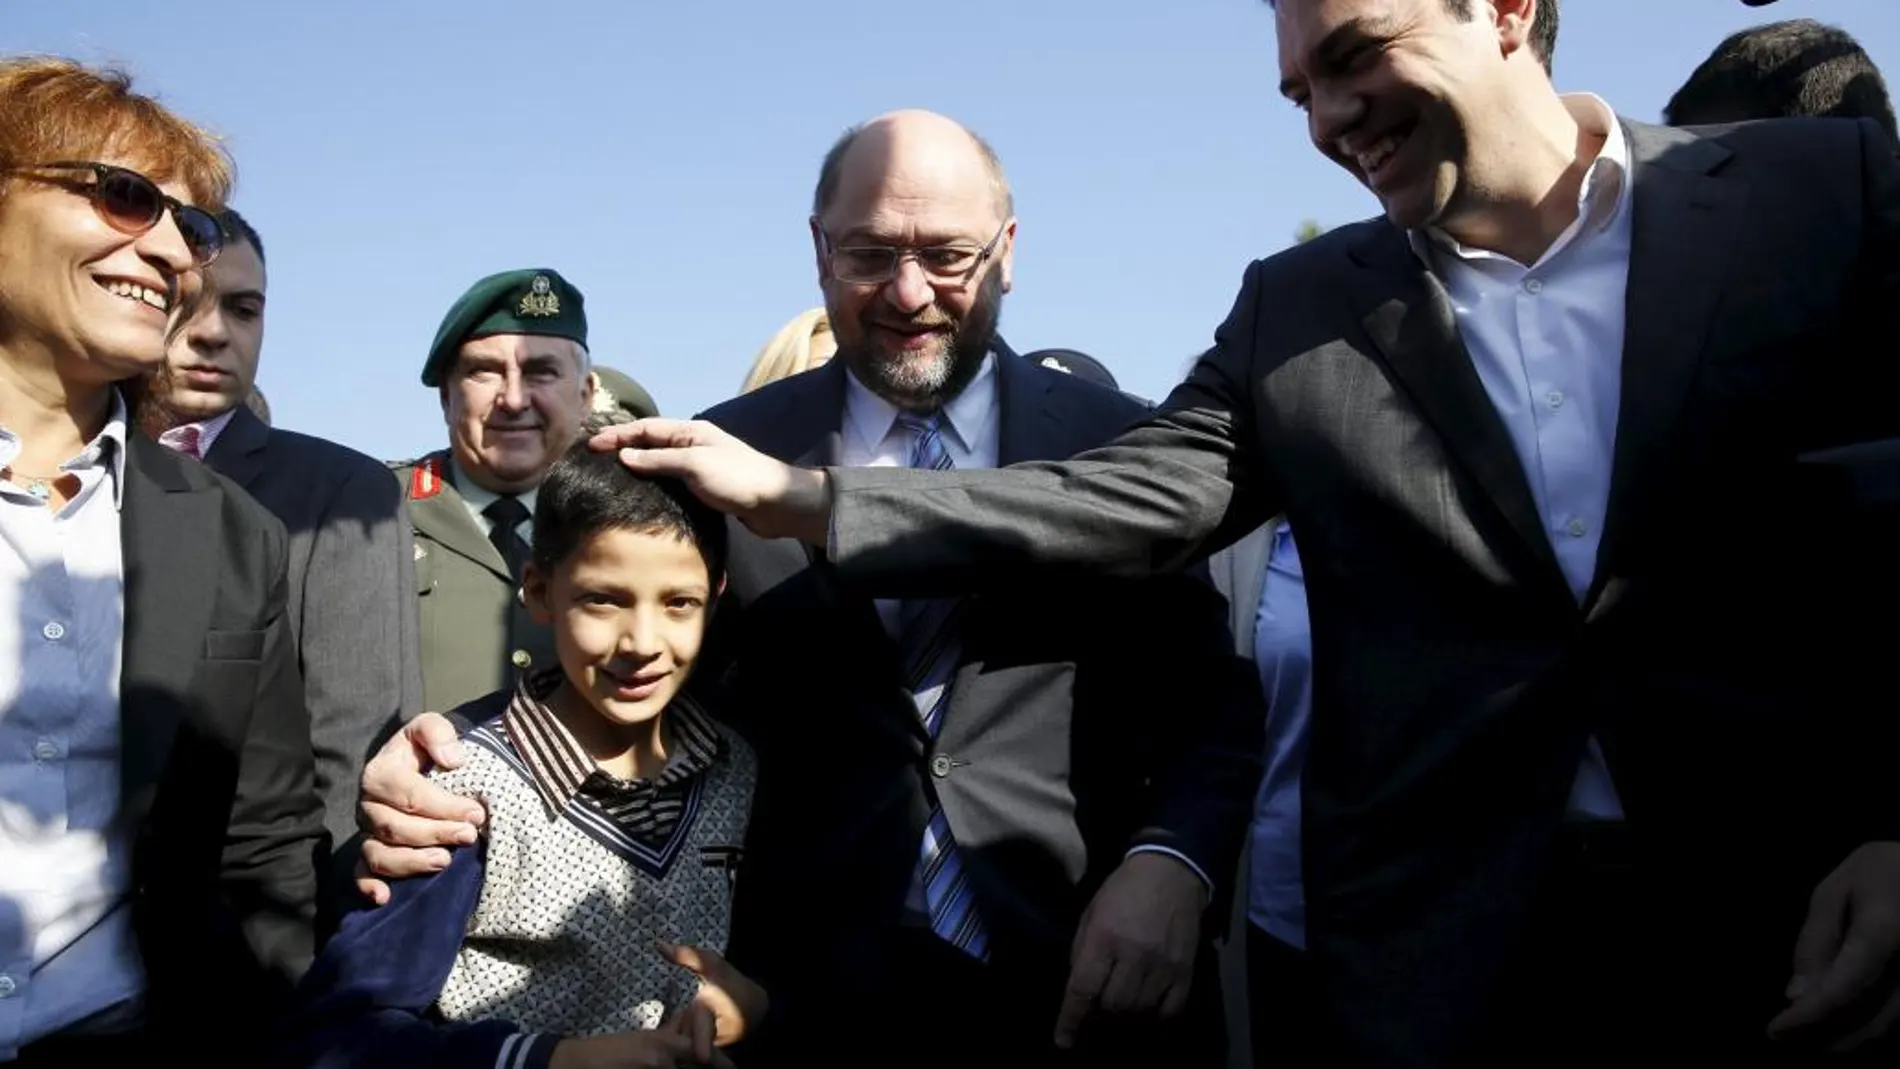 El primer ministro griego, Alexis Tsipras, y el presidente del Parlamento Europeo, Martin Schulz saludan a un niño refugiado.